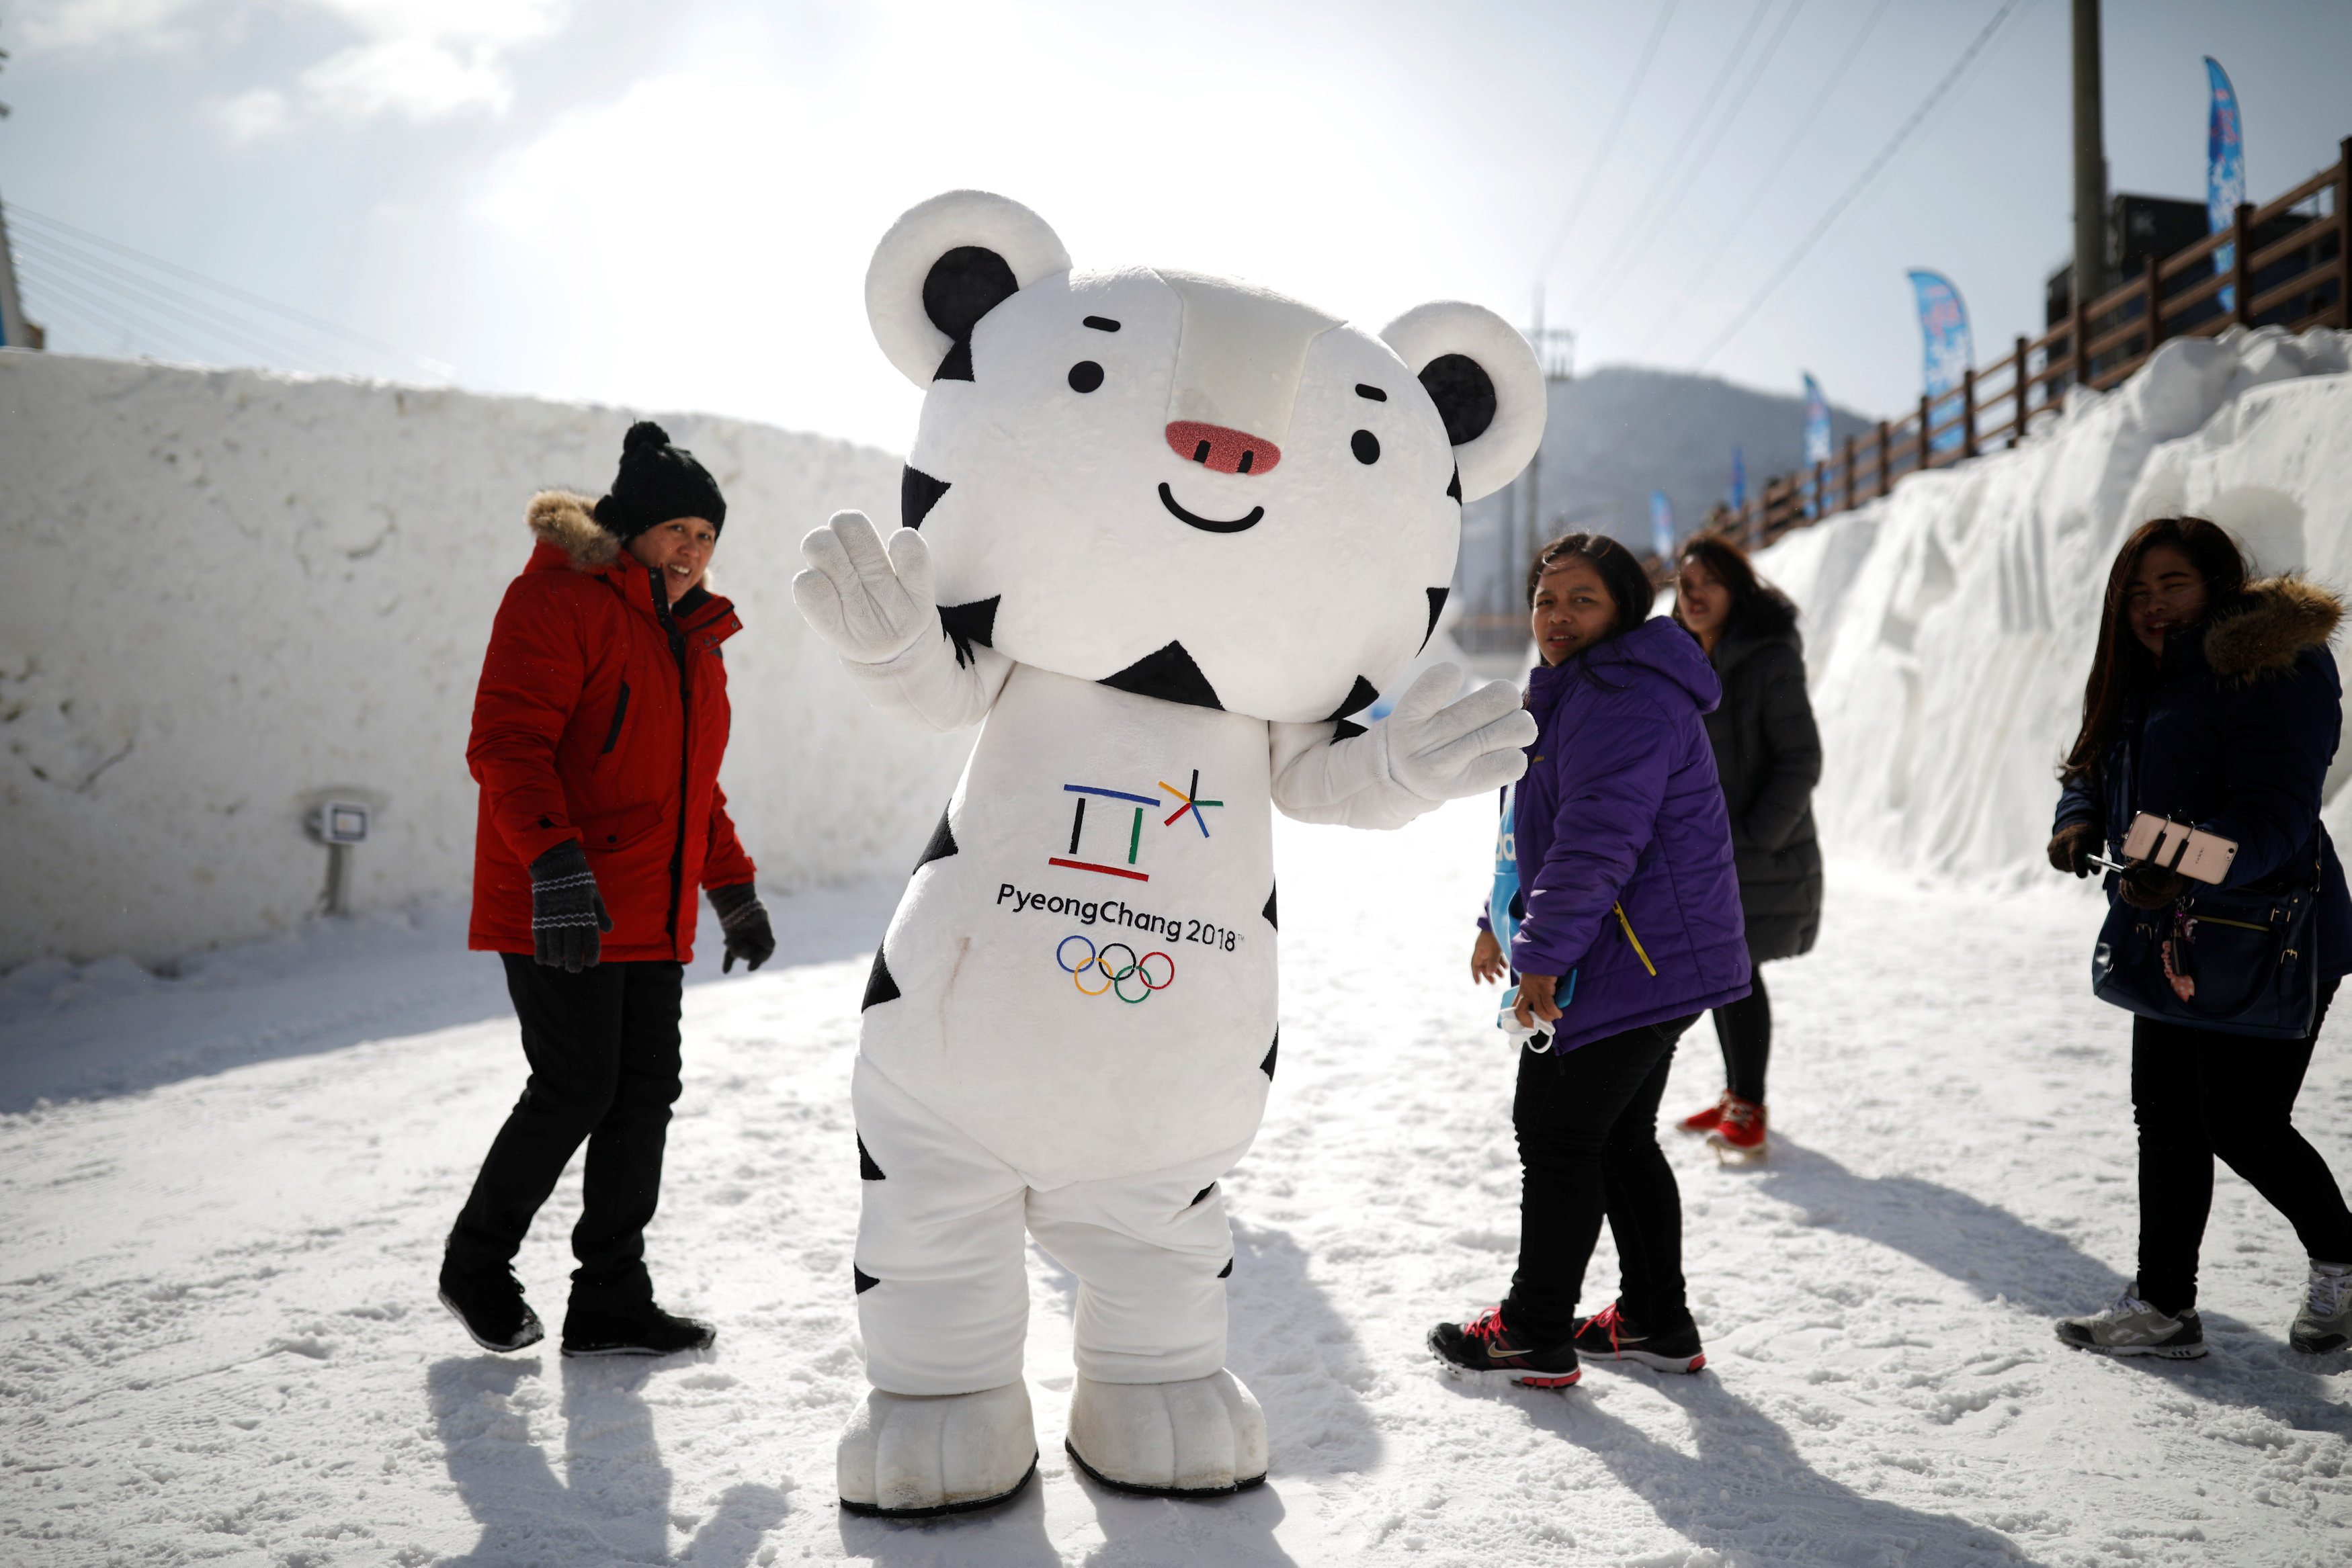 المواطنون يلتقطون الصورة مع دمية الألعاب الأولمبية فى مركز احتفالات الدورة الشتوية 2018